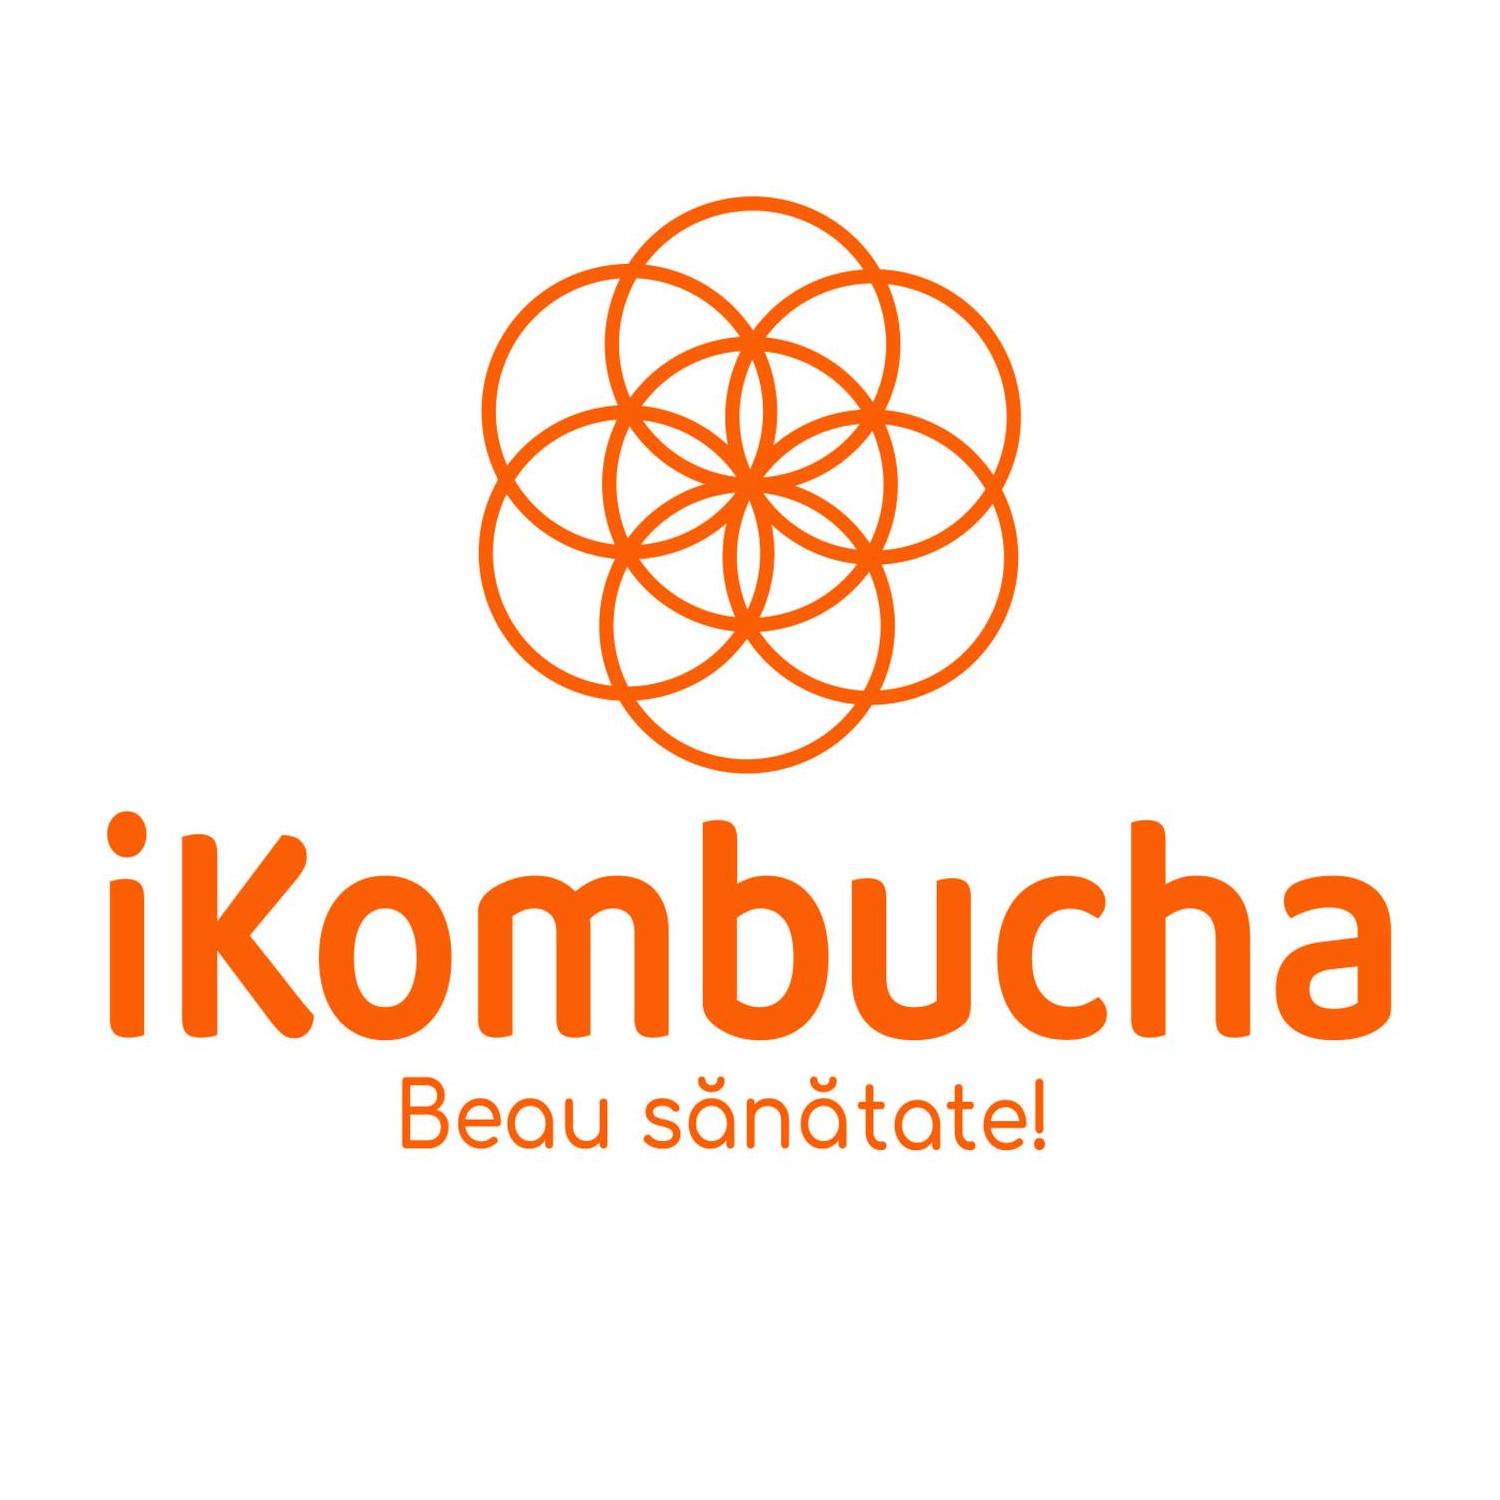 iKombutcha